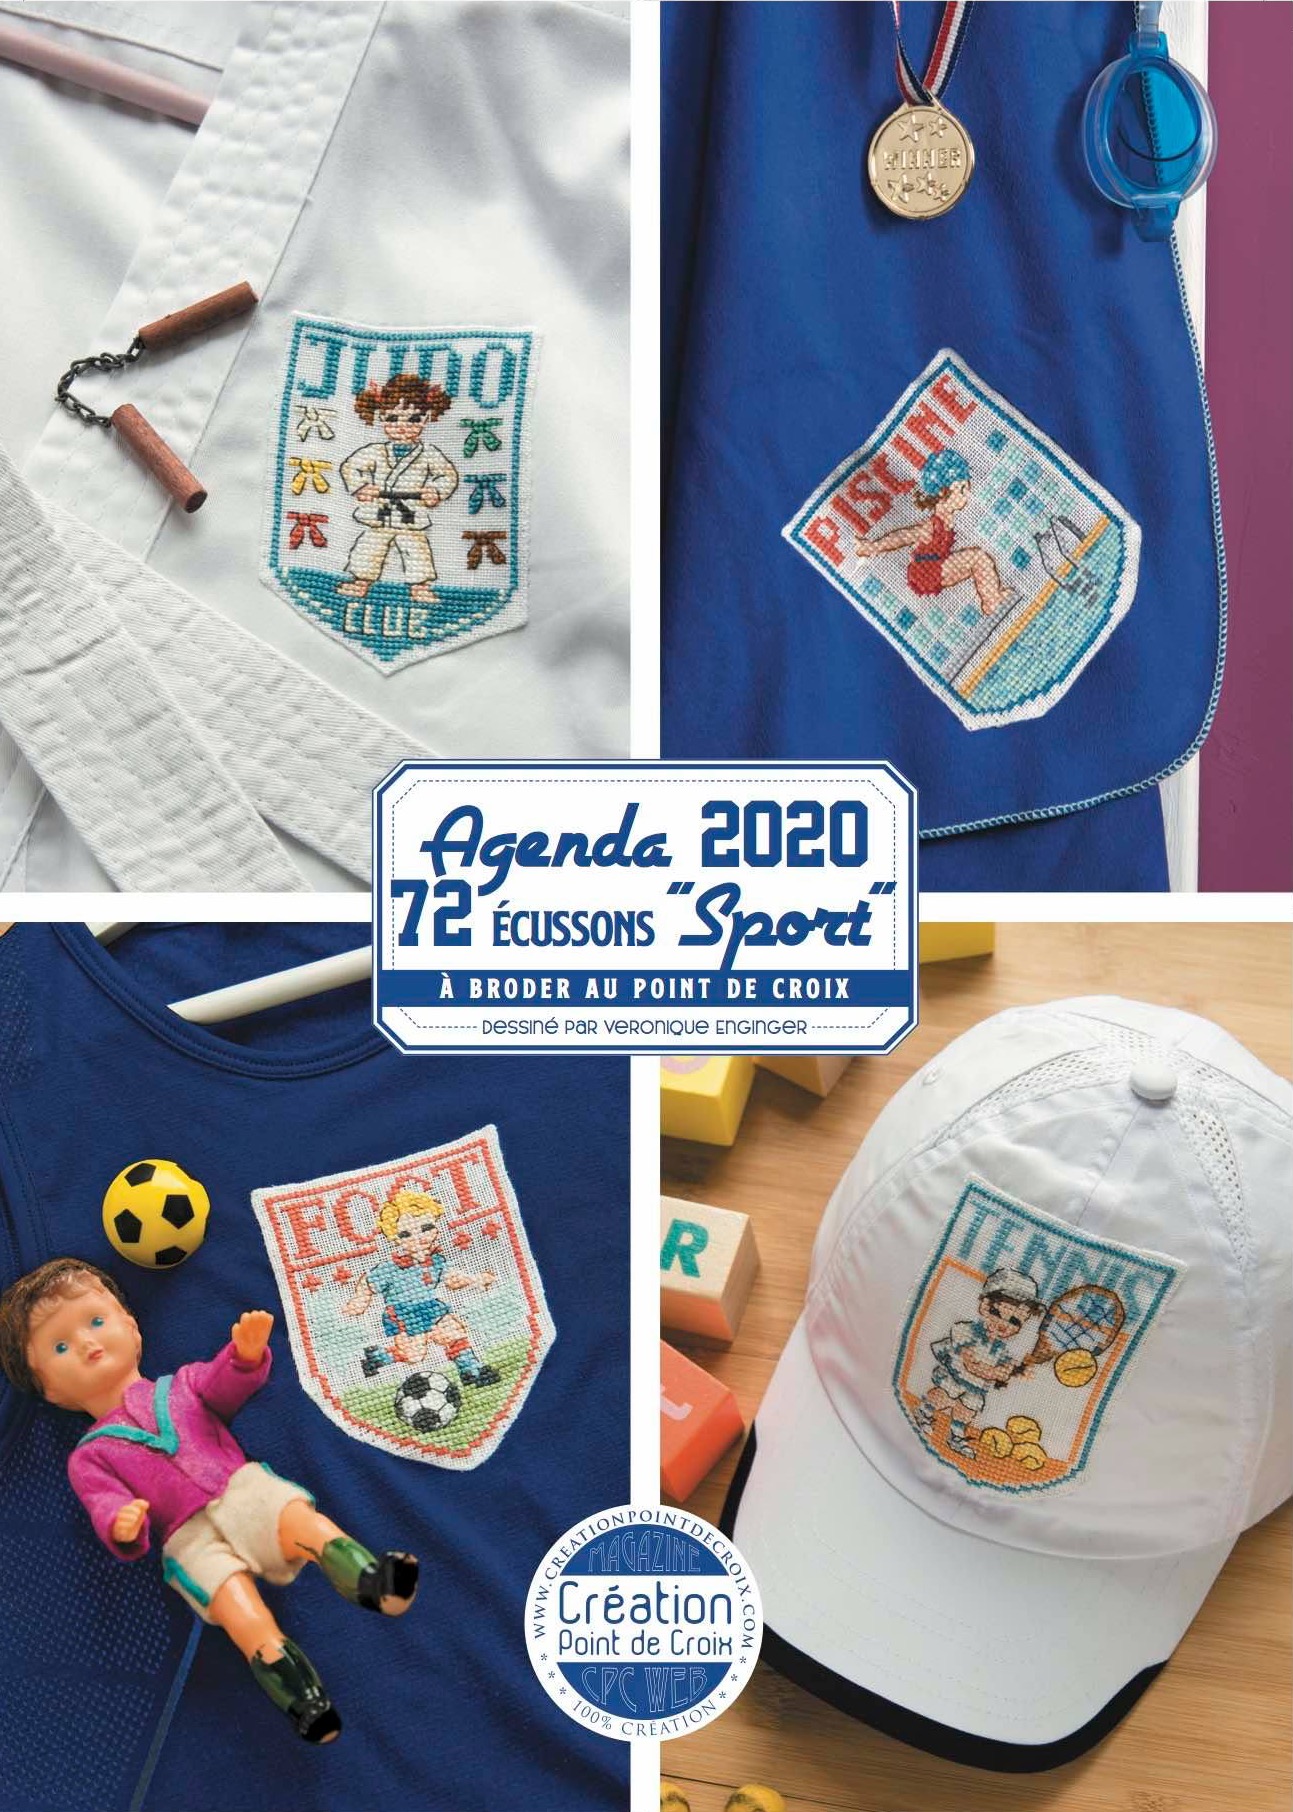 Agenda 2020 Creation Point de Croix - Sport